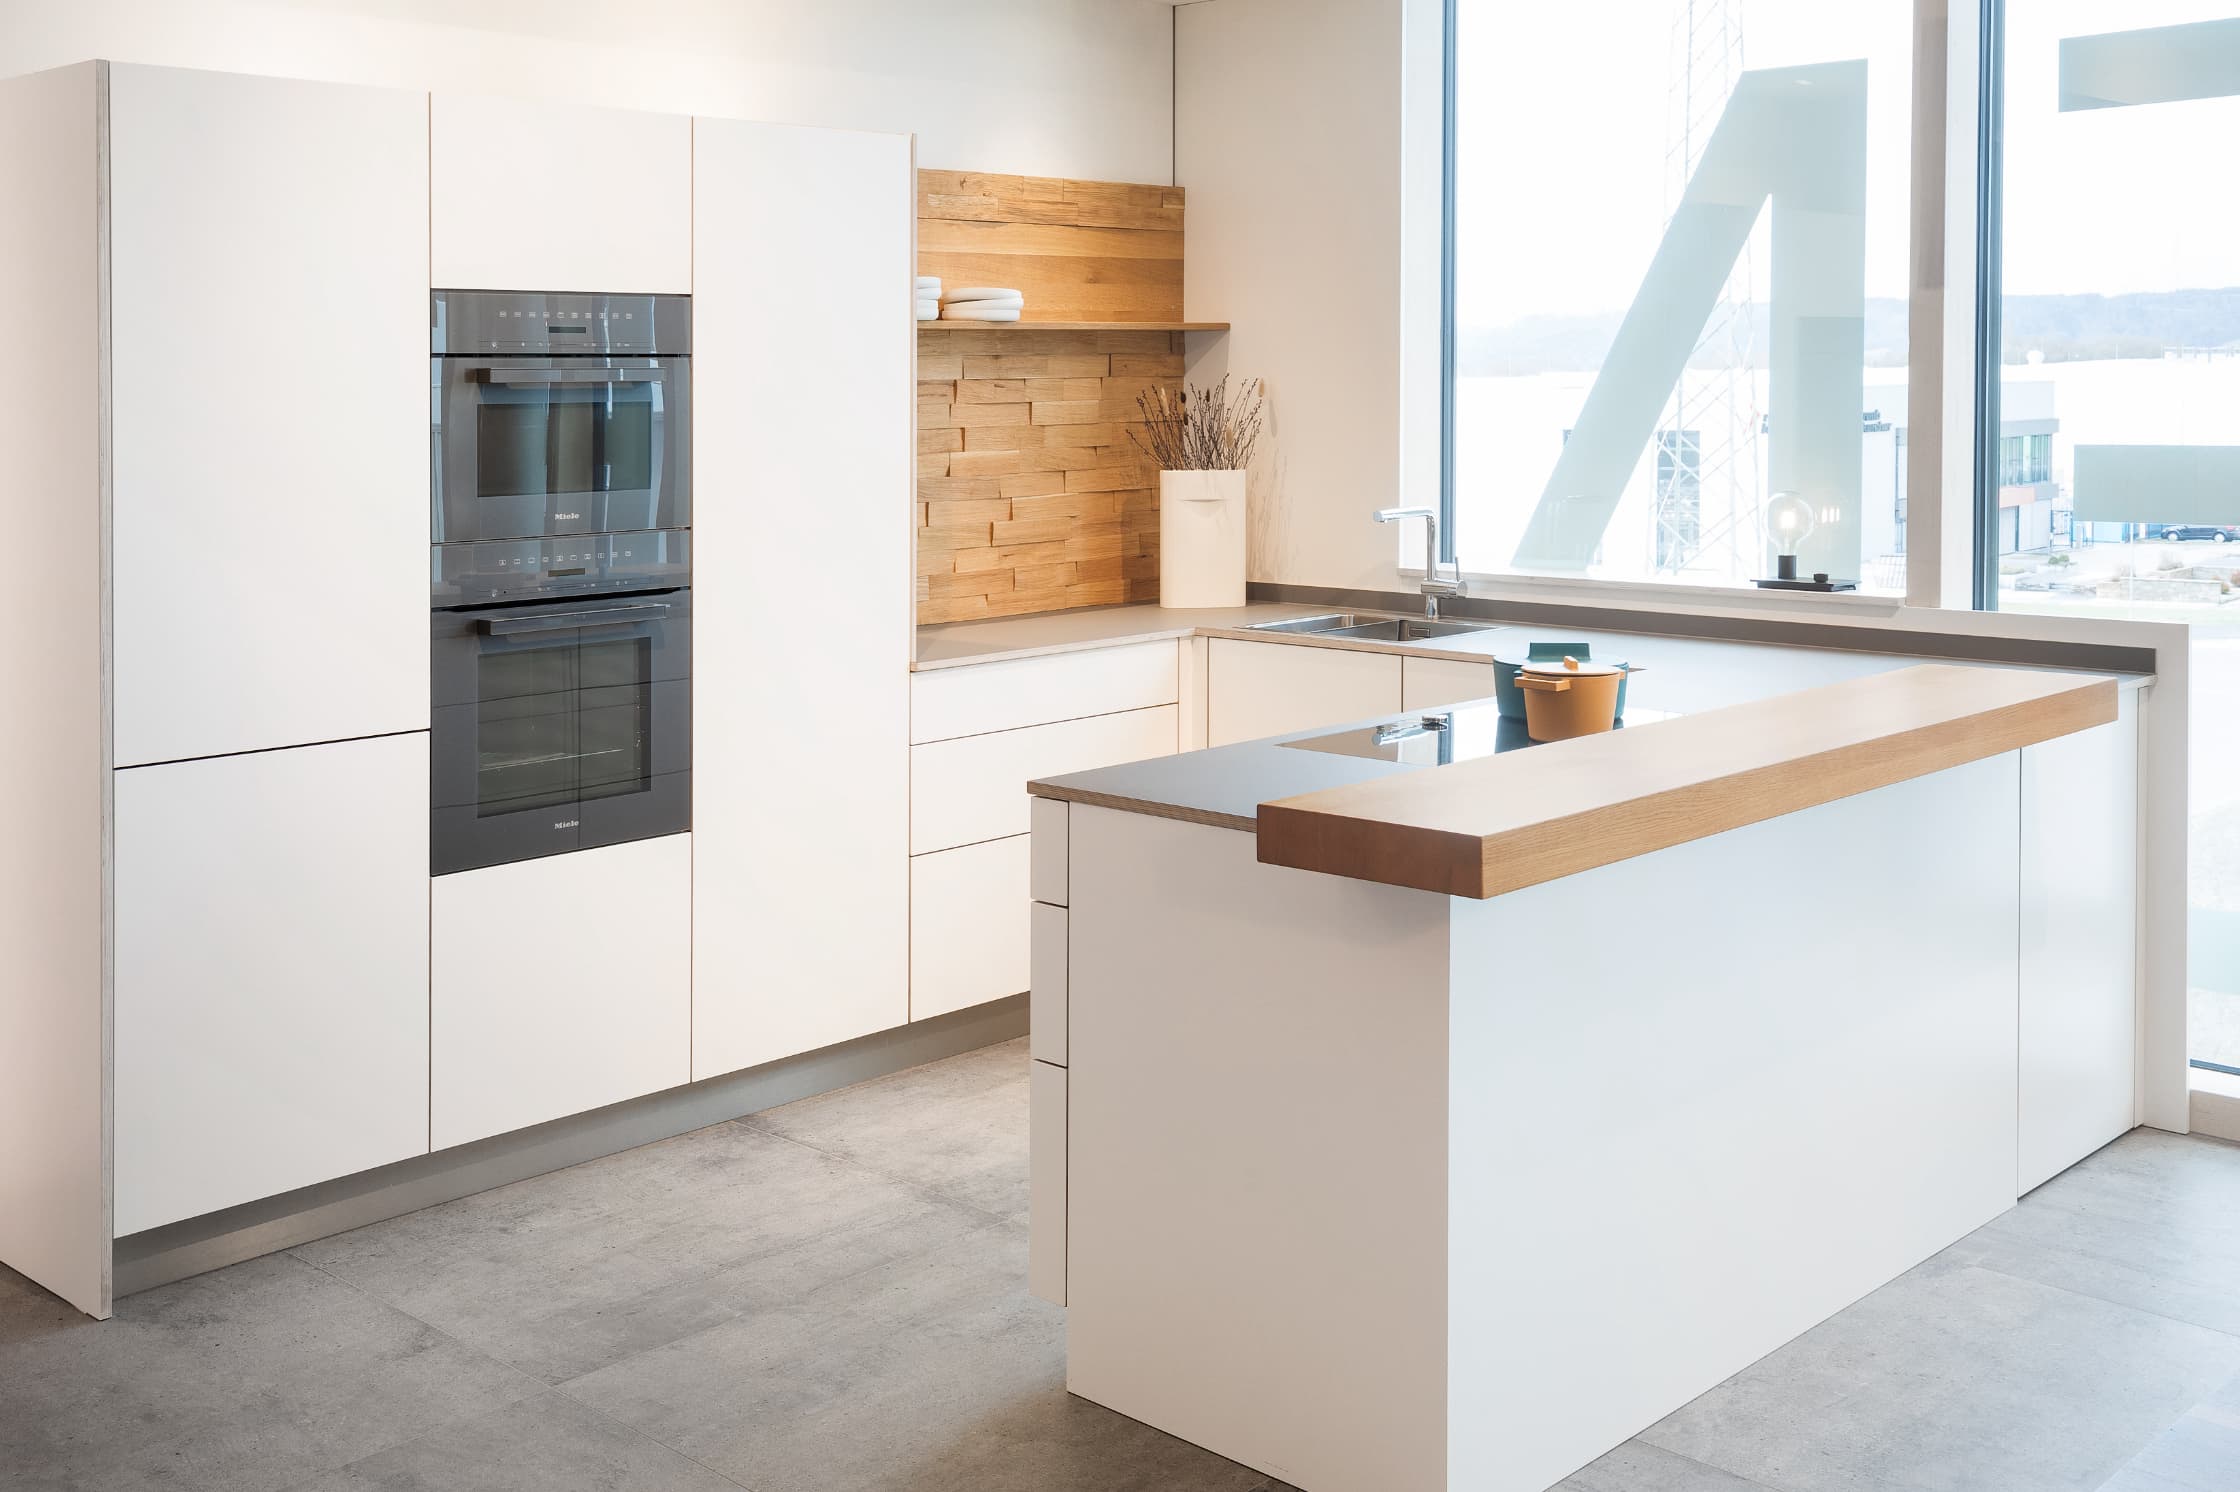 Küche in Weiß und Grau mit Spaltholz-Rückwand